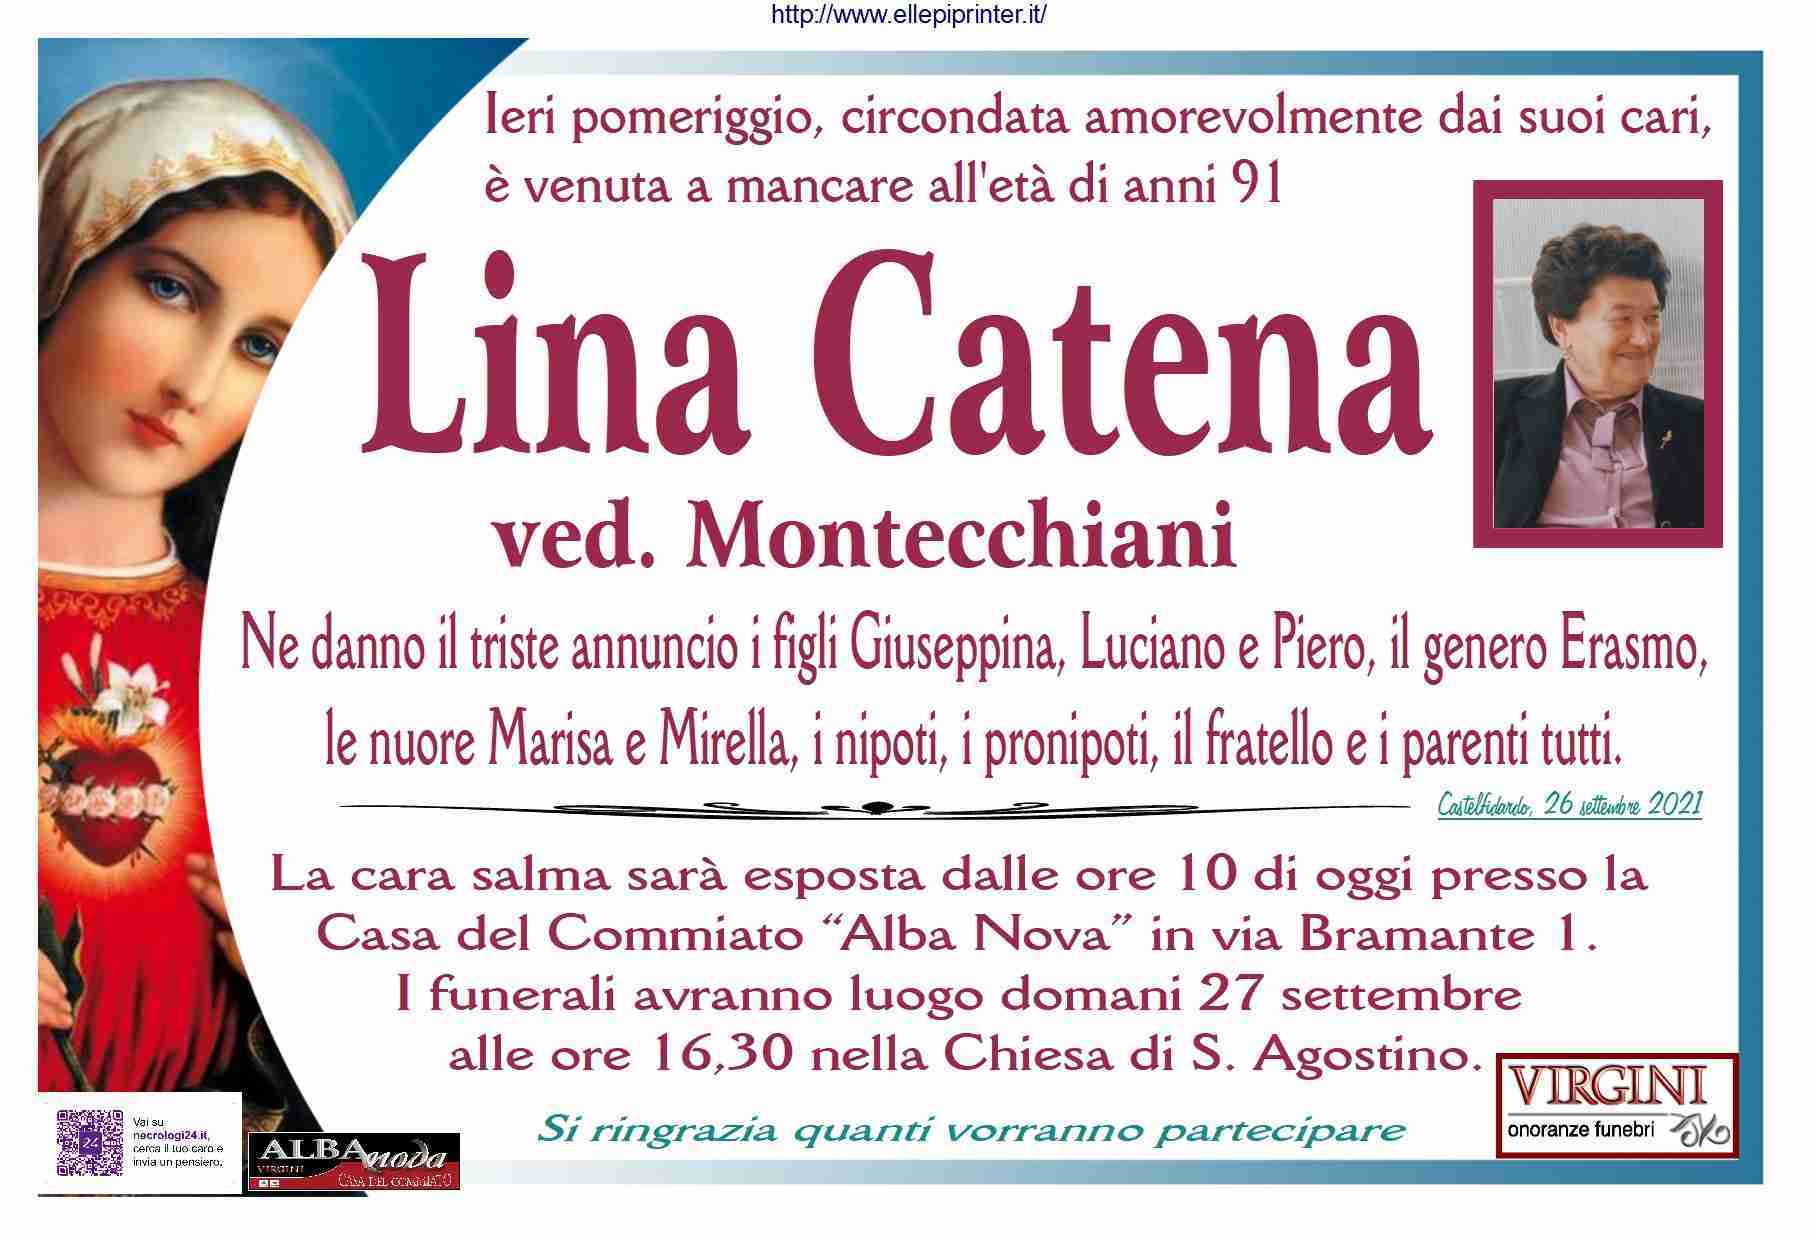 Lina Catena